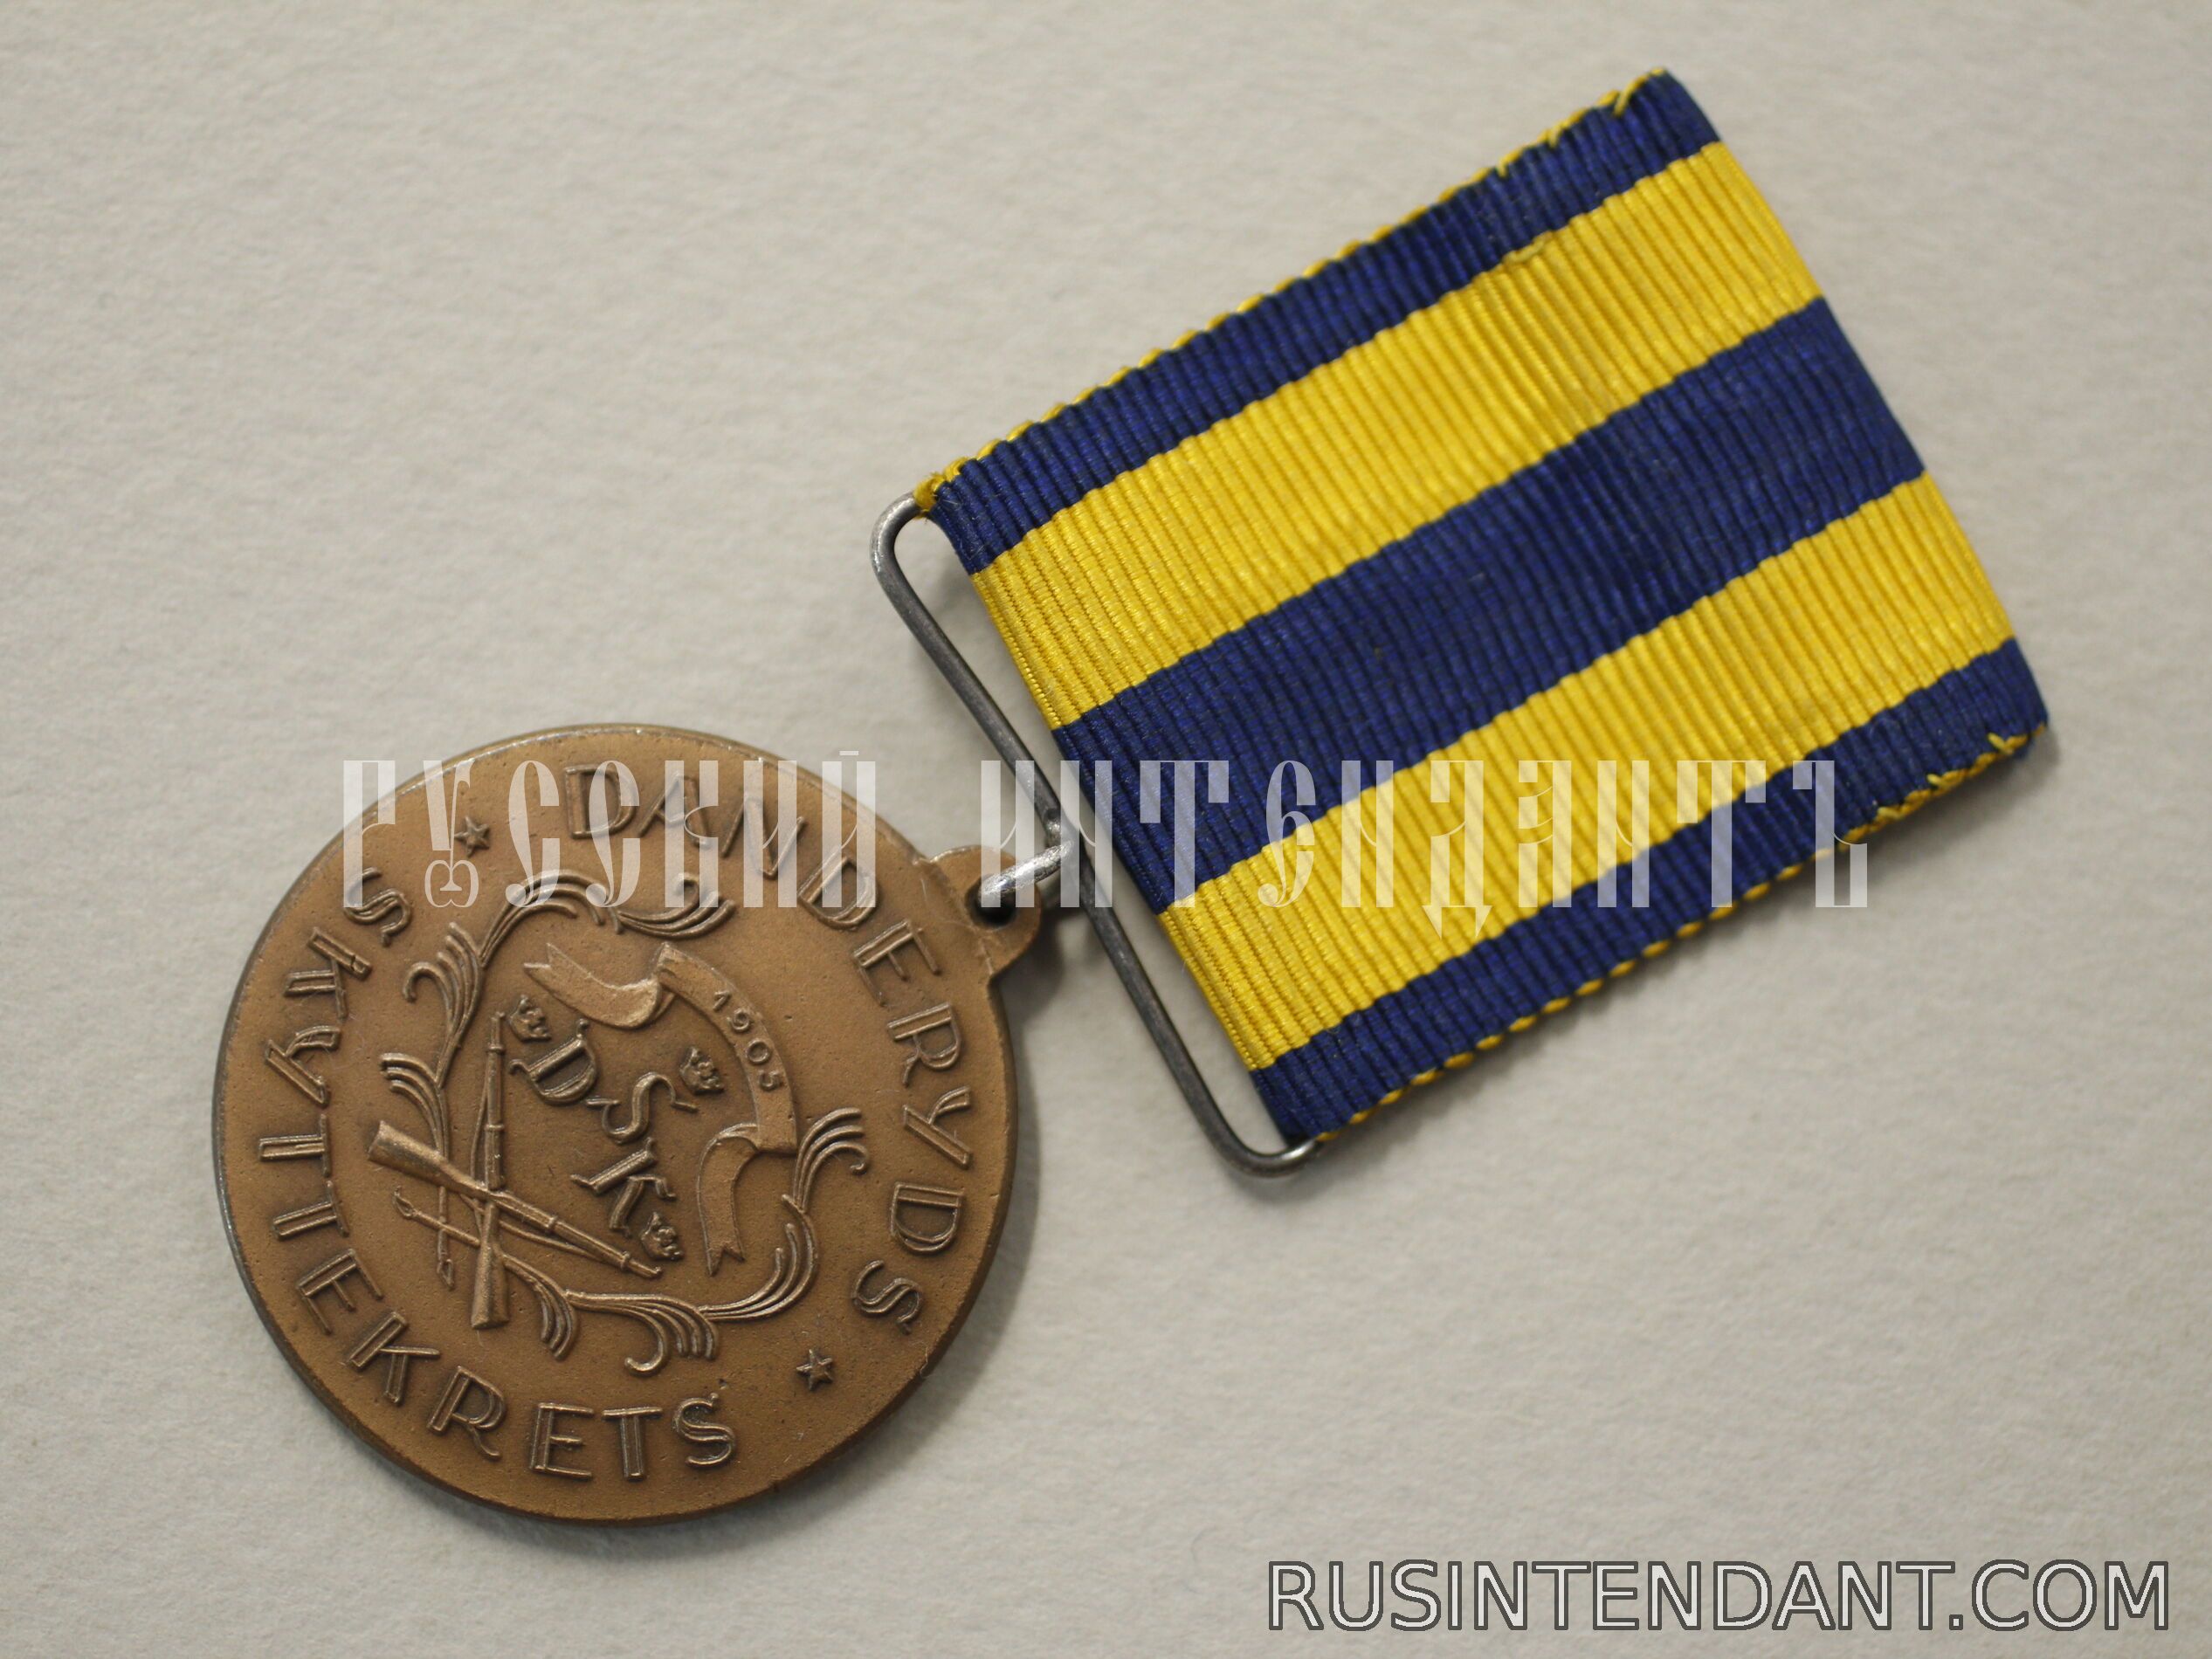 Фото 3: Наградная медаль стрельбища Дандерюд 